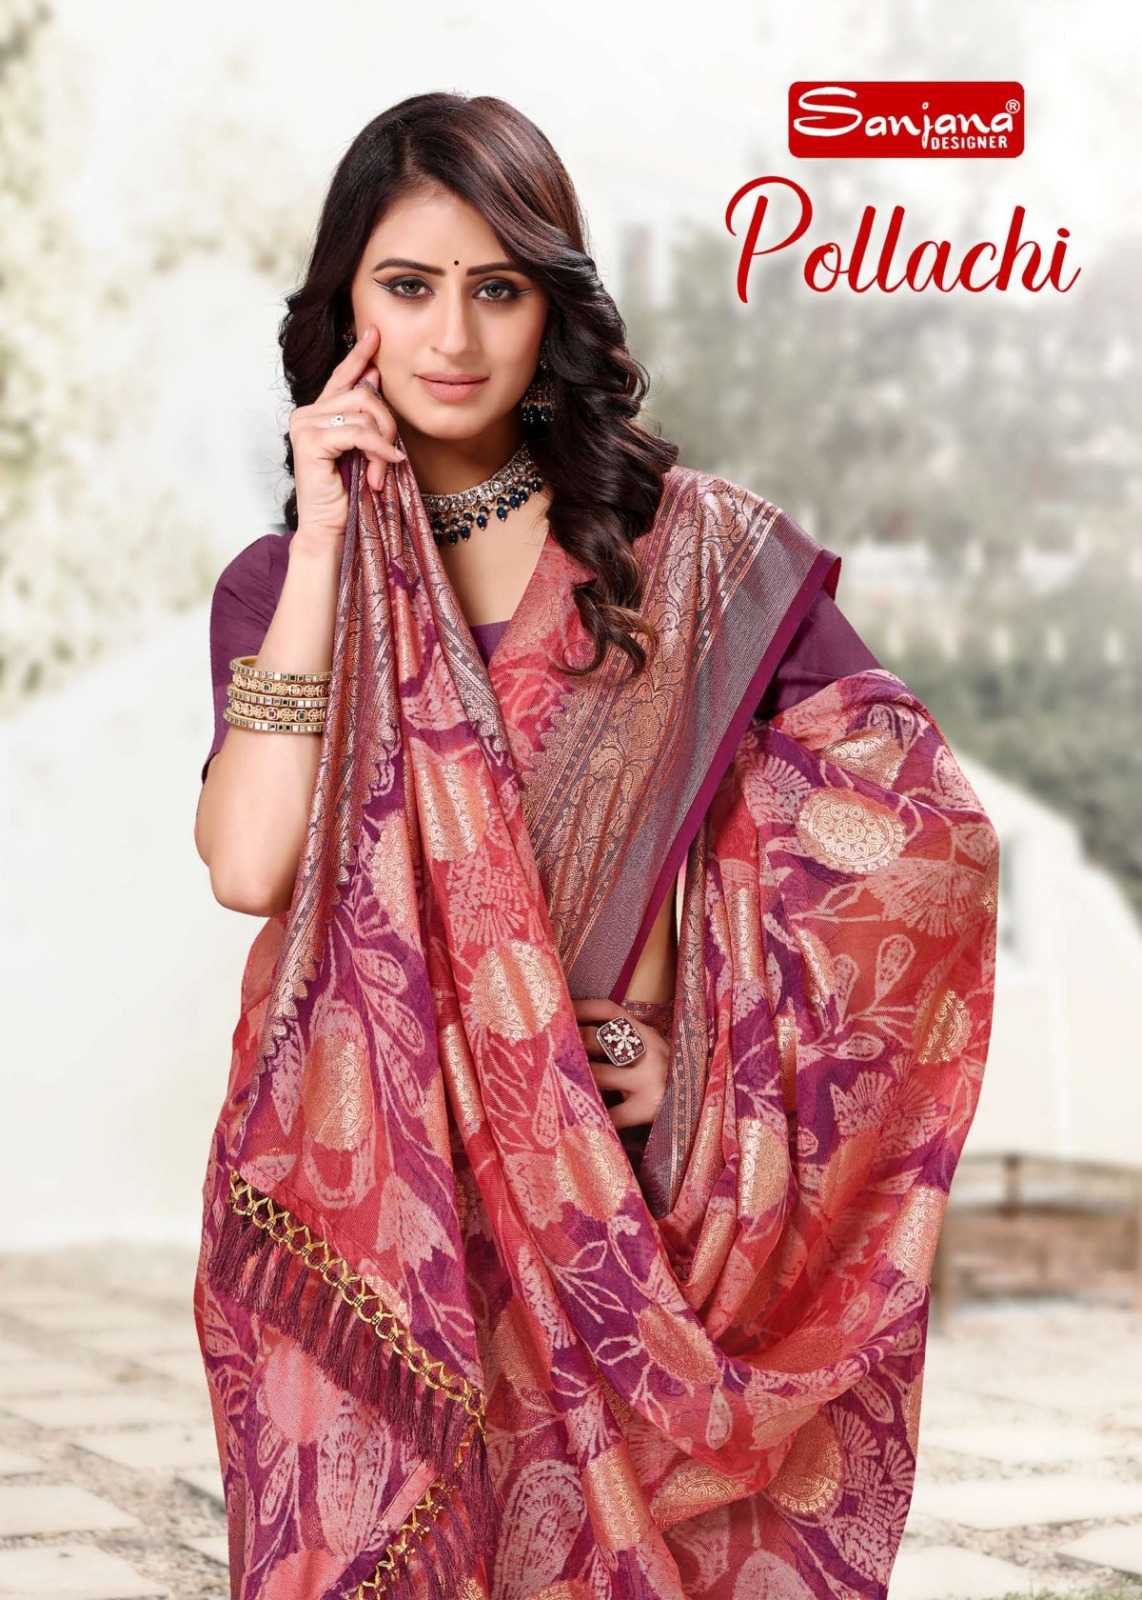 sanjana designer pollachi beautiful fancy sarees collection